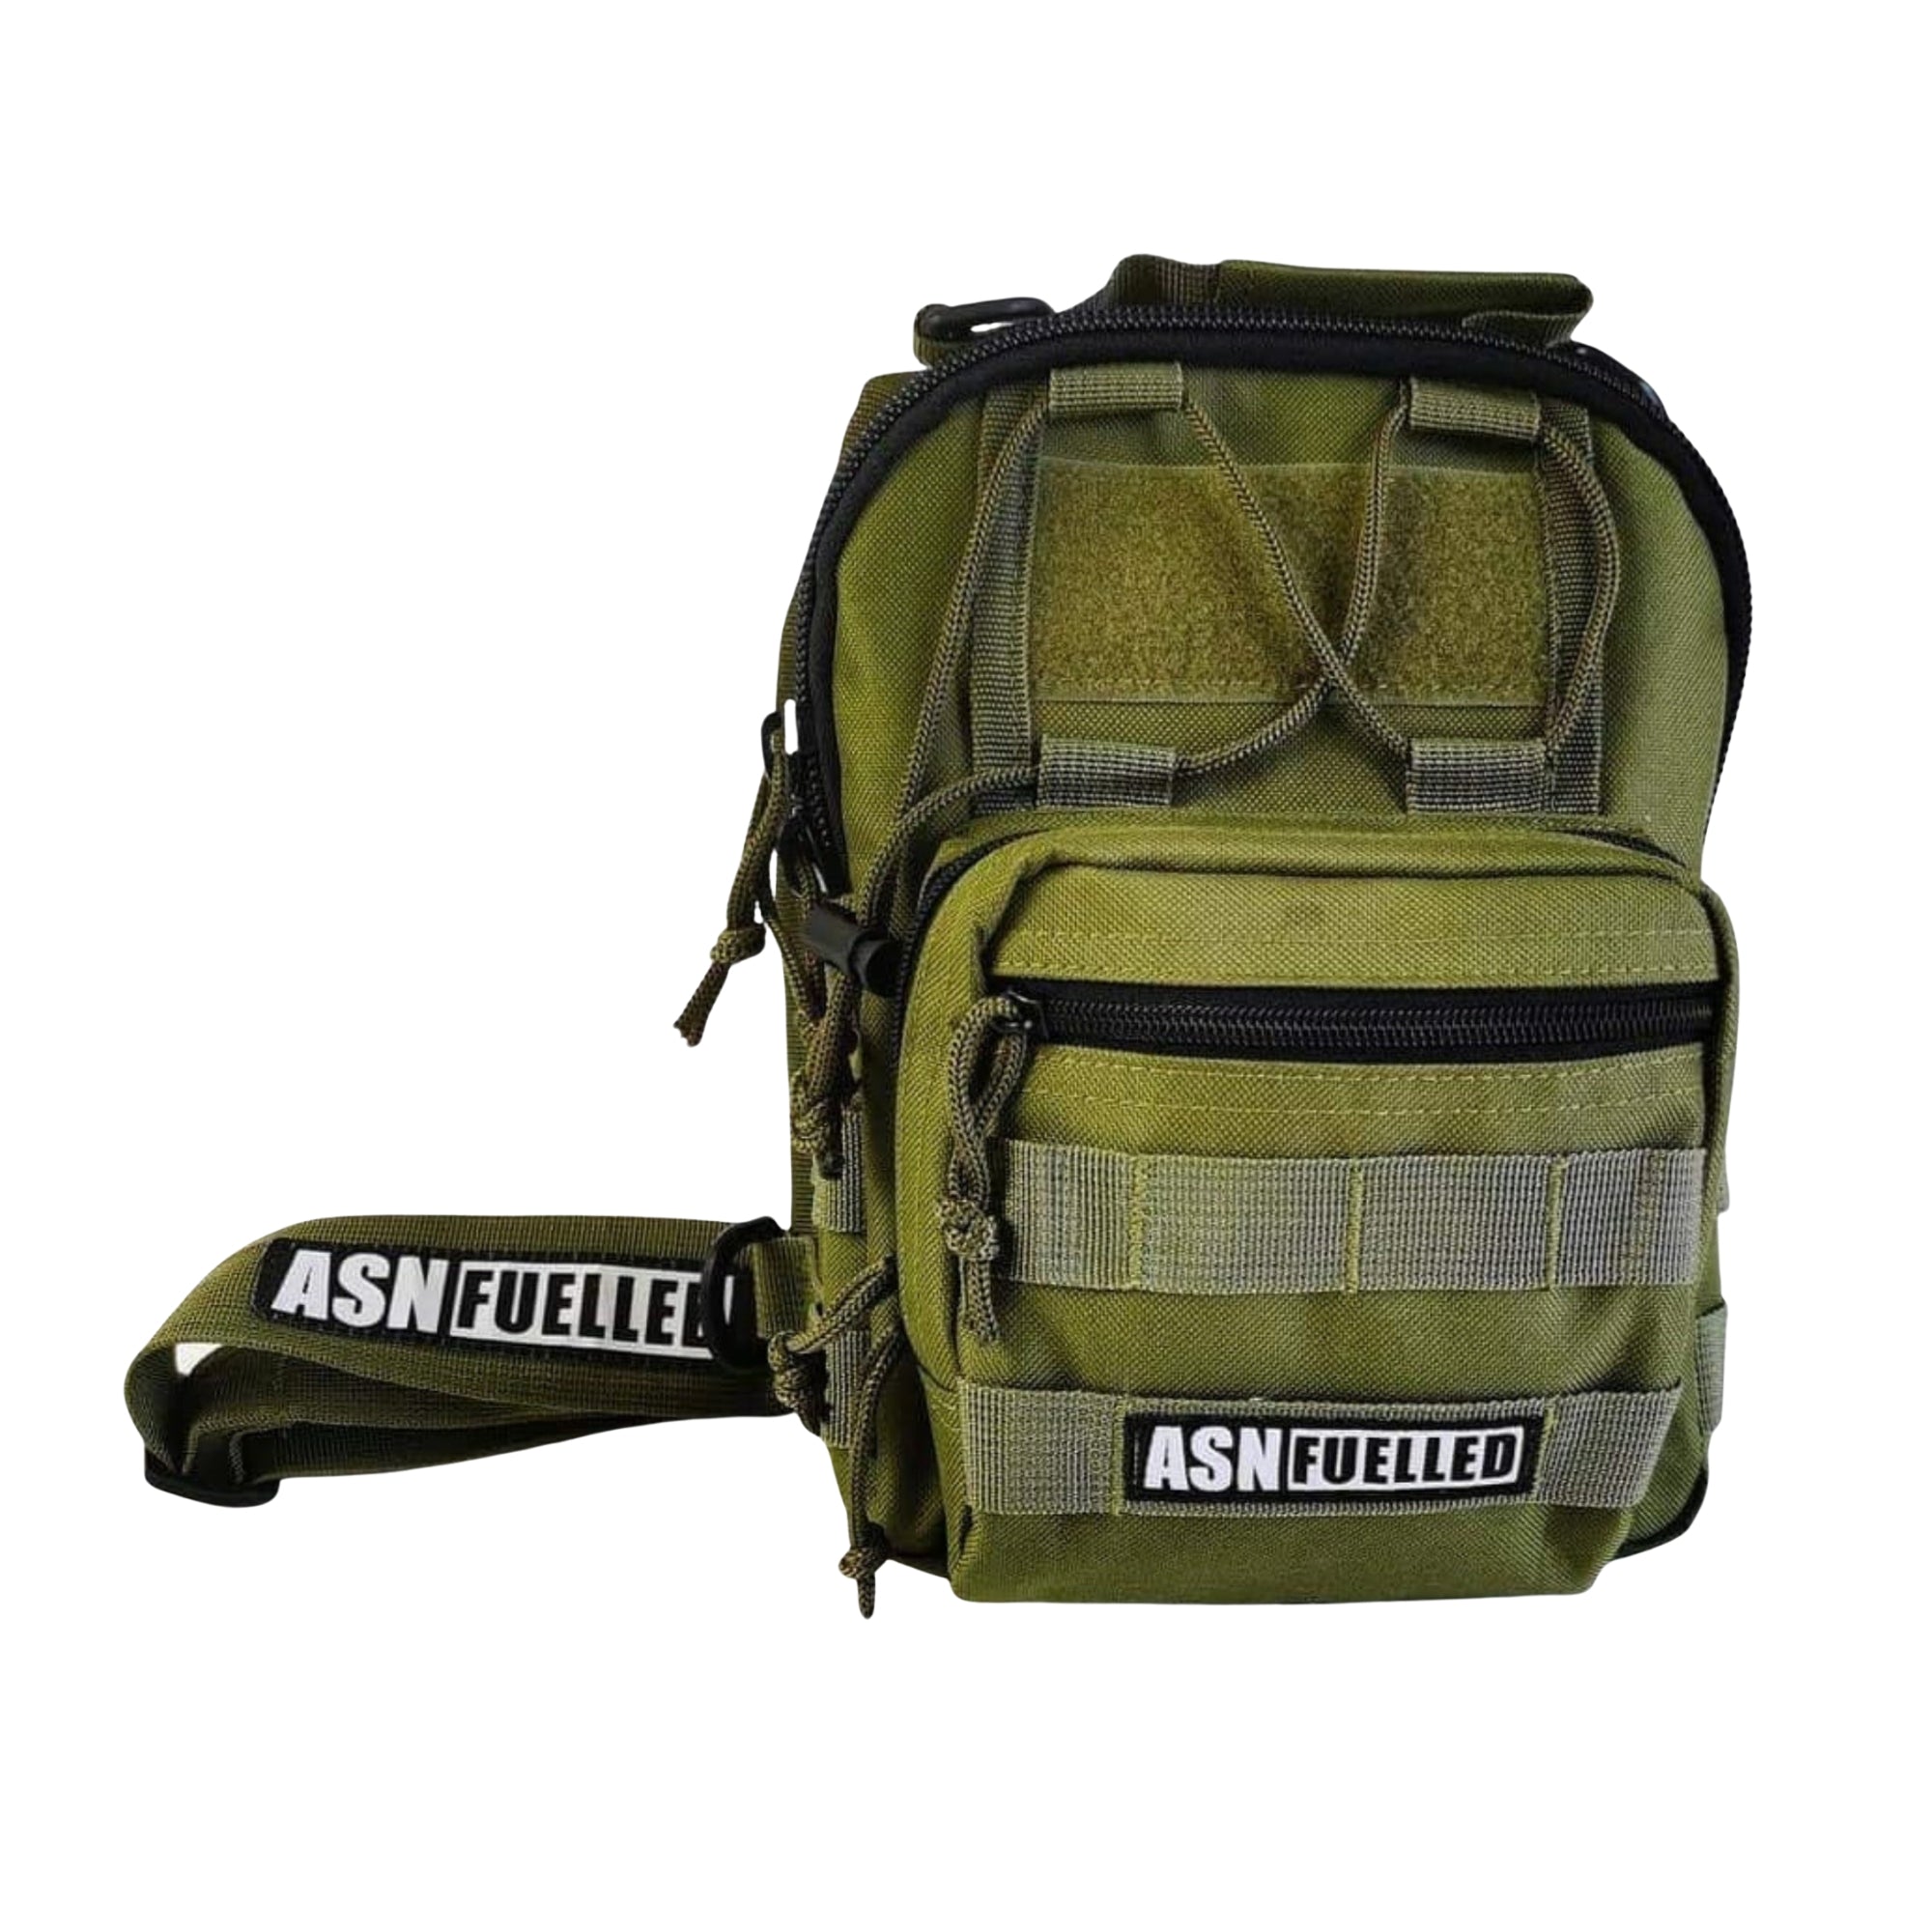 ASN Fuelled Sling Bag